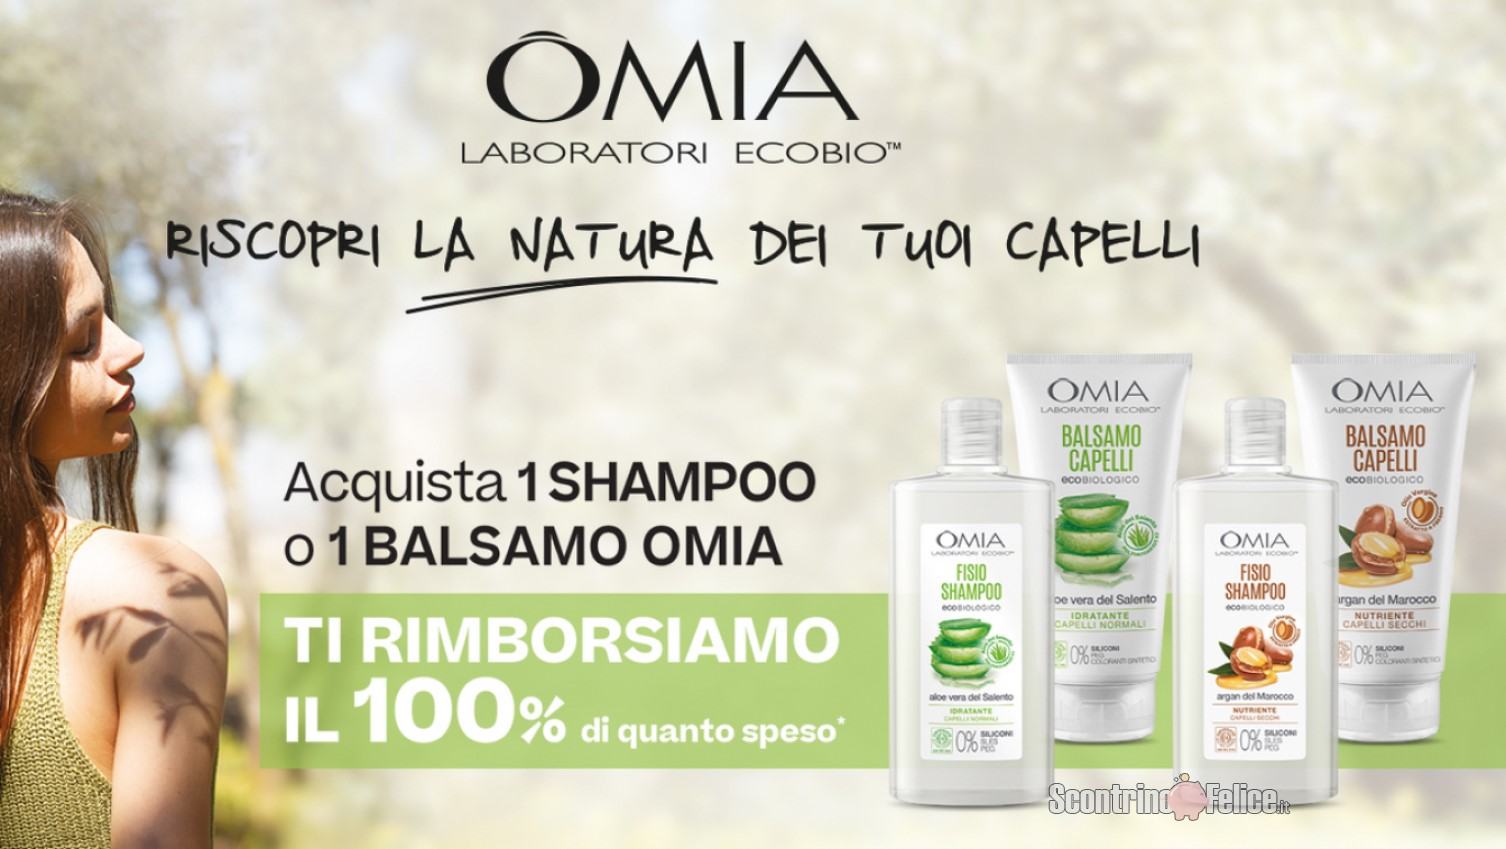 Cashback Omia “Riscopri La Natura Dei Tuoi Capelli”: ricevi il rimborso di 1 shampoo o di 1 balsamo